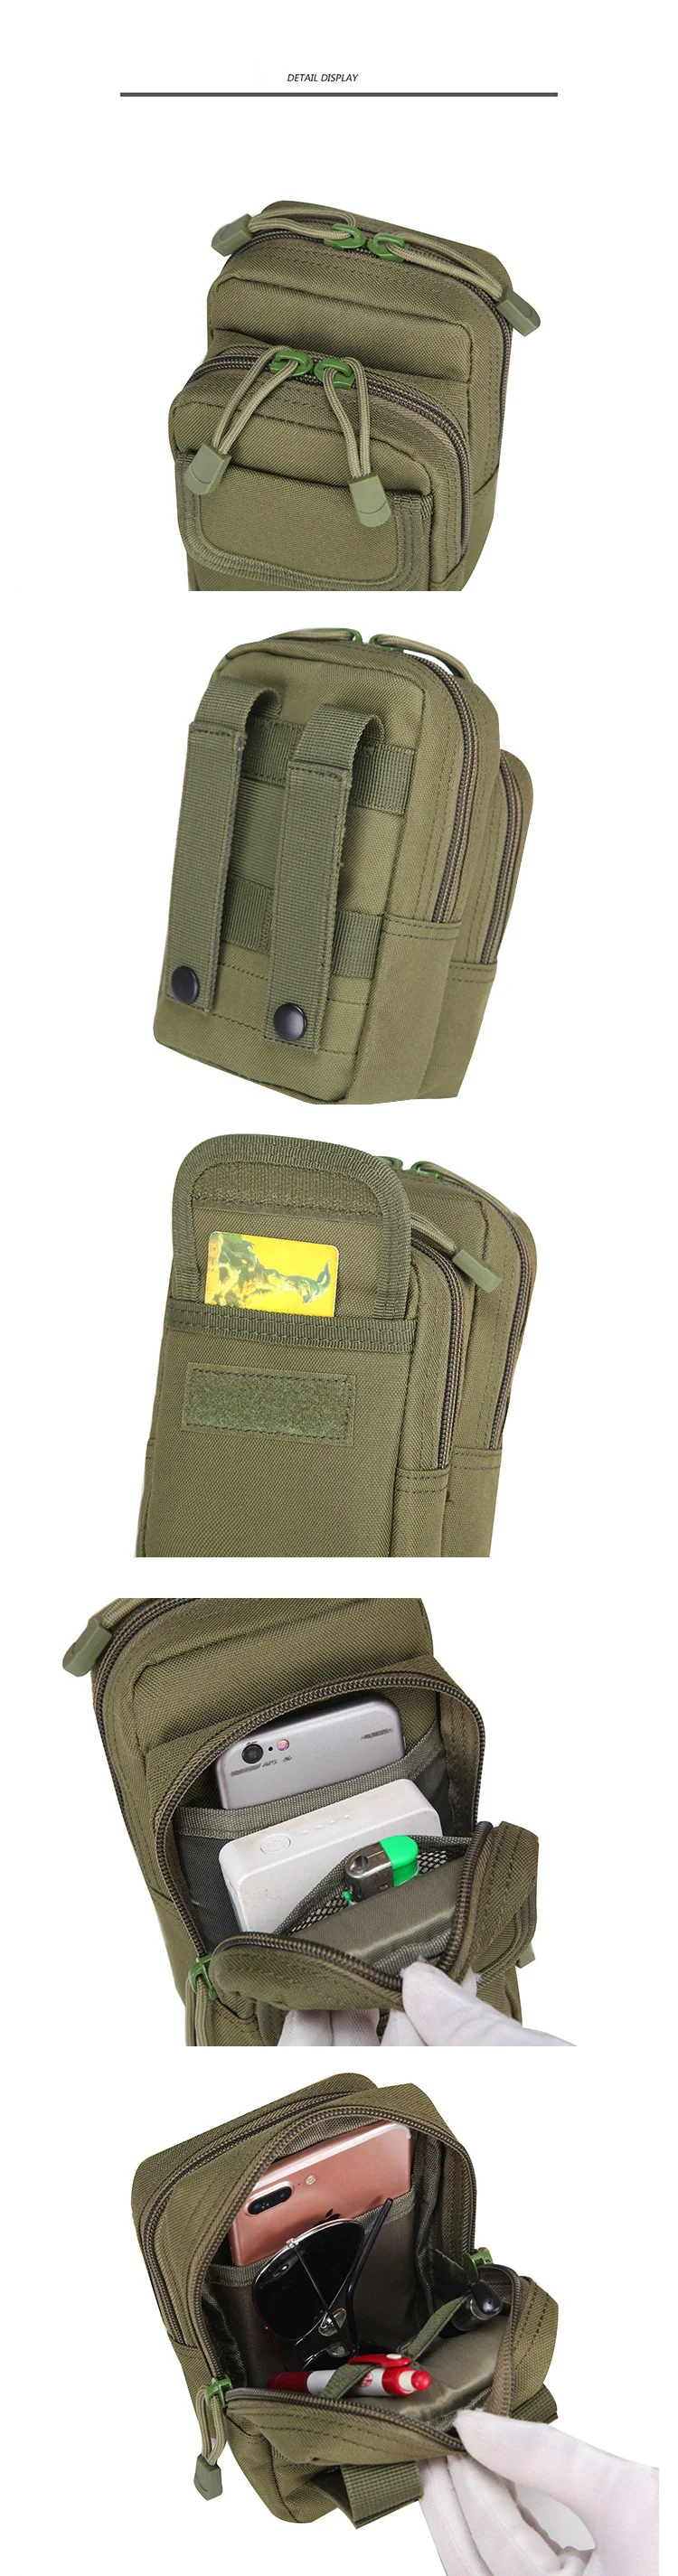 Mege армейская военная техника, маленькая сумка, тактическая камуфляжная сумка, сумка для мобильного телефона, мужской кошелек, водонепроницаемая поясная сумка, Оксфорд 1000D